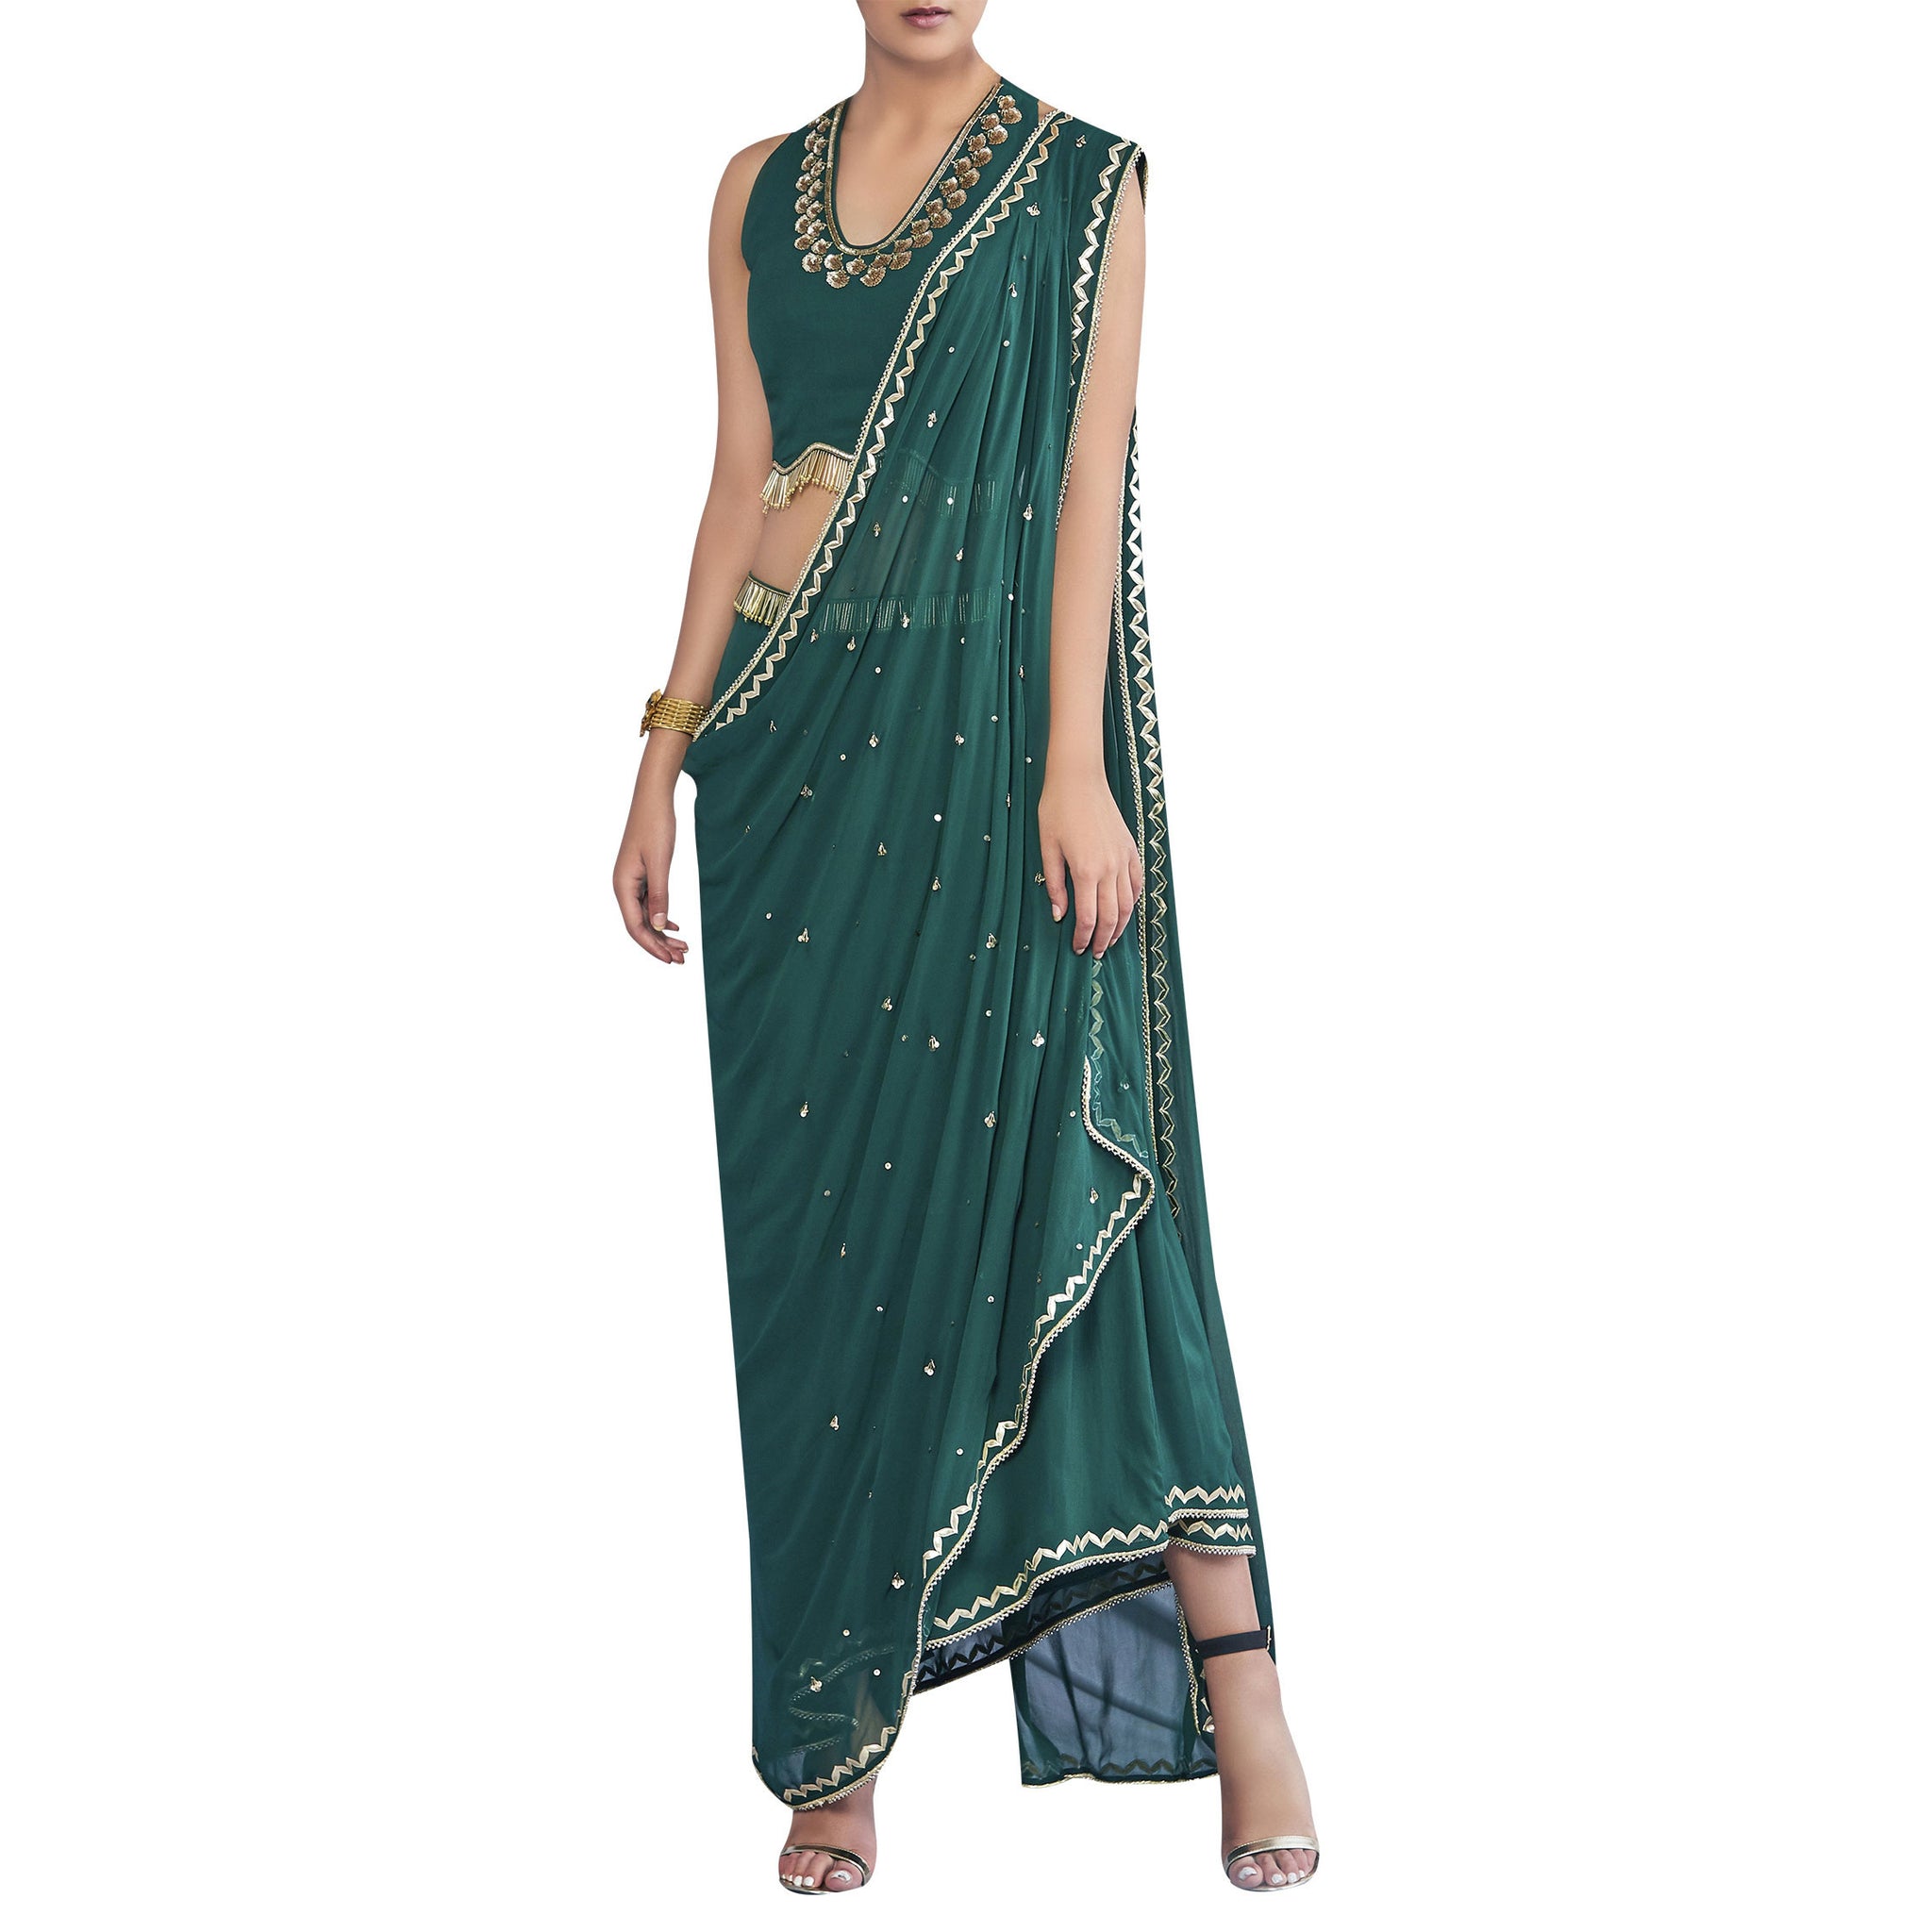 Embroidered Pre-Draped sari